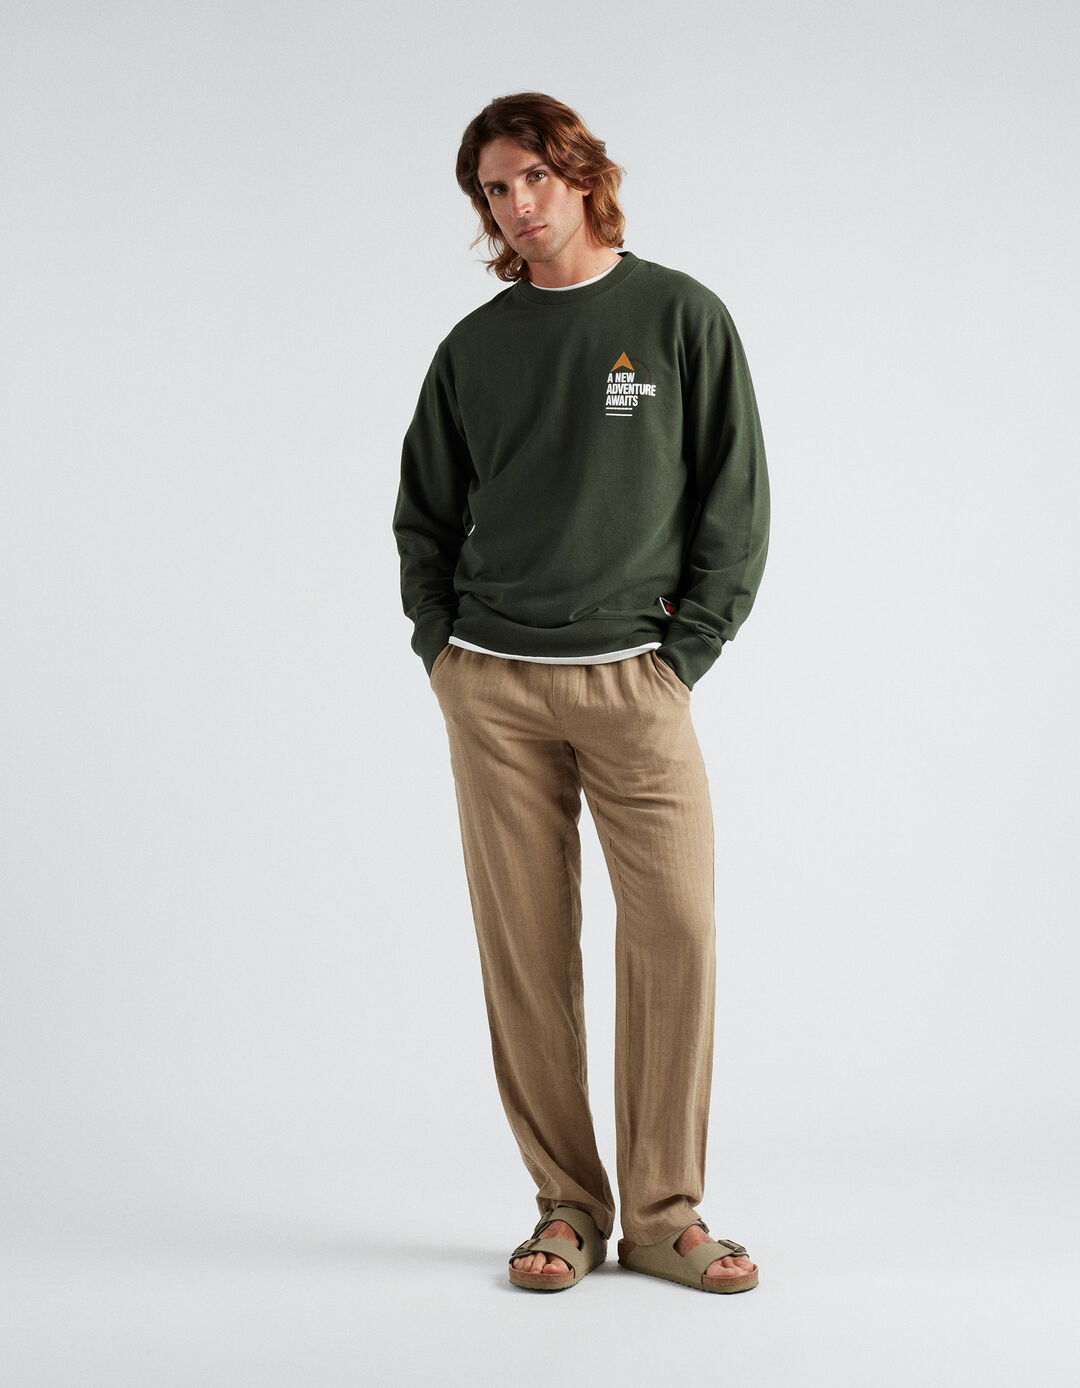 Sweatshirt Estampado, Homem, Verde Escuro